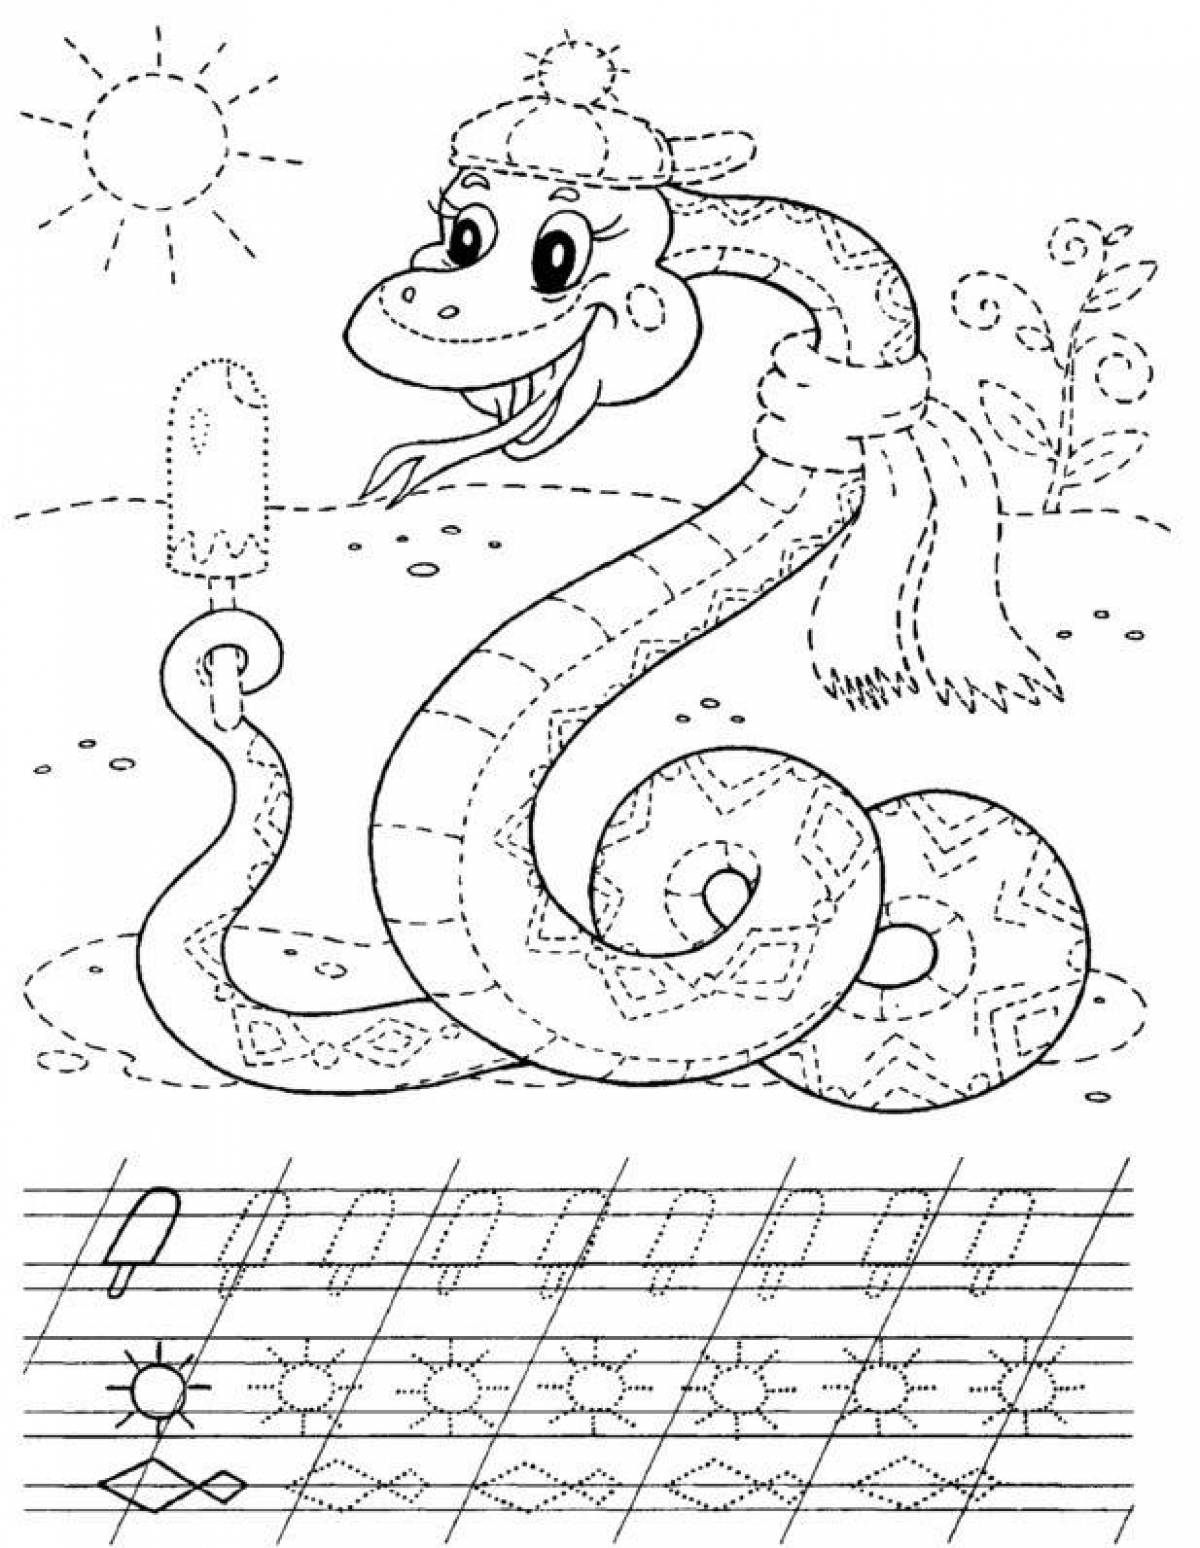 Snake script